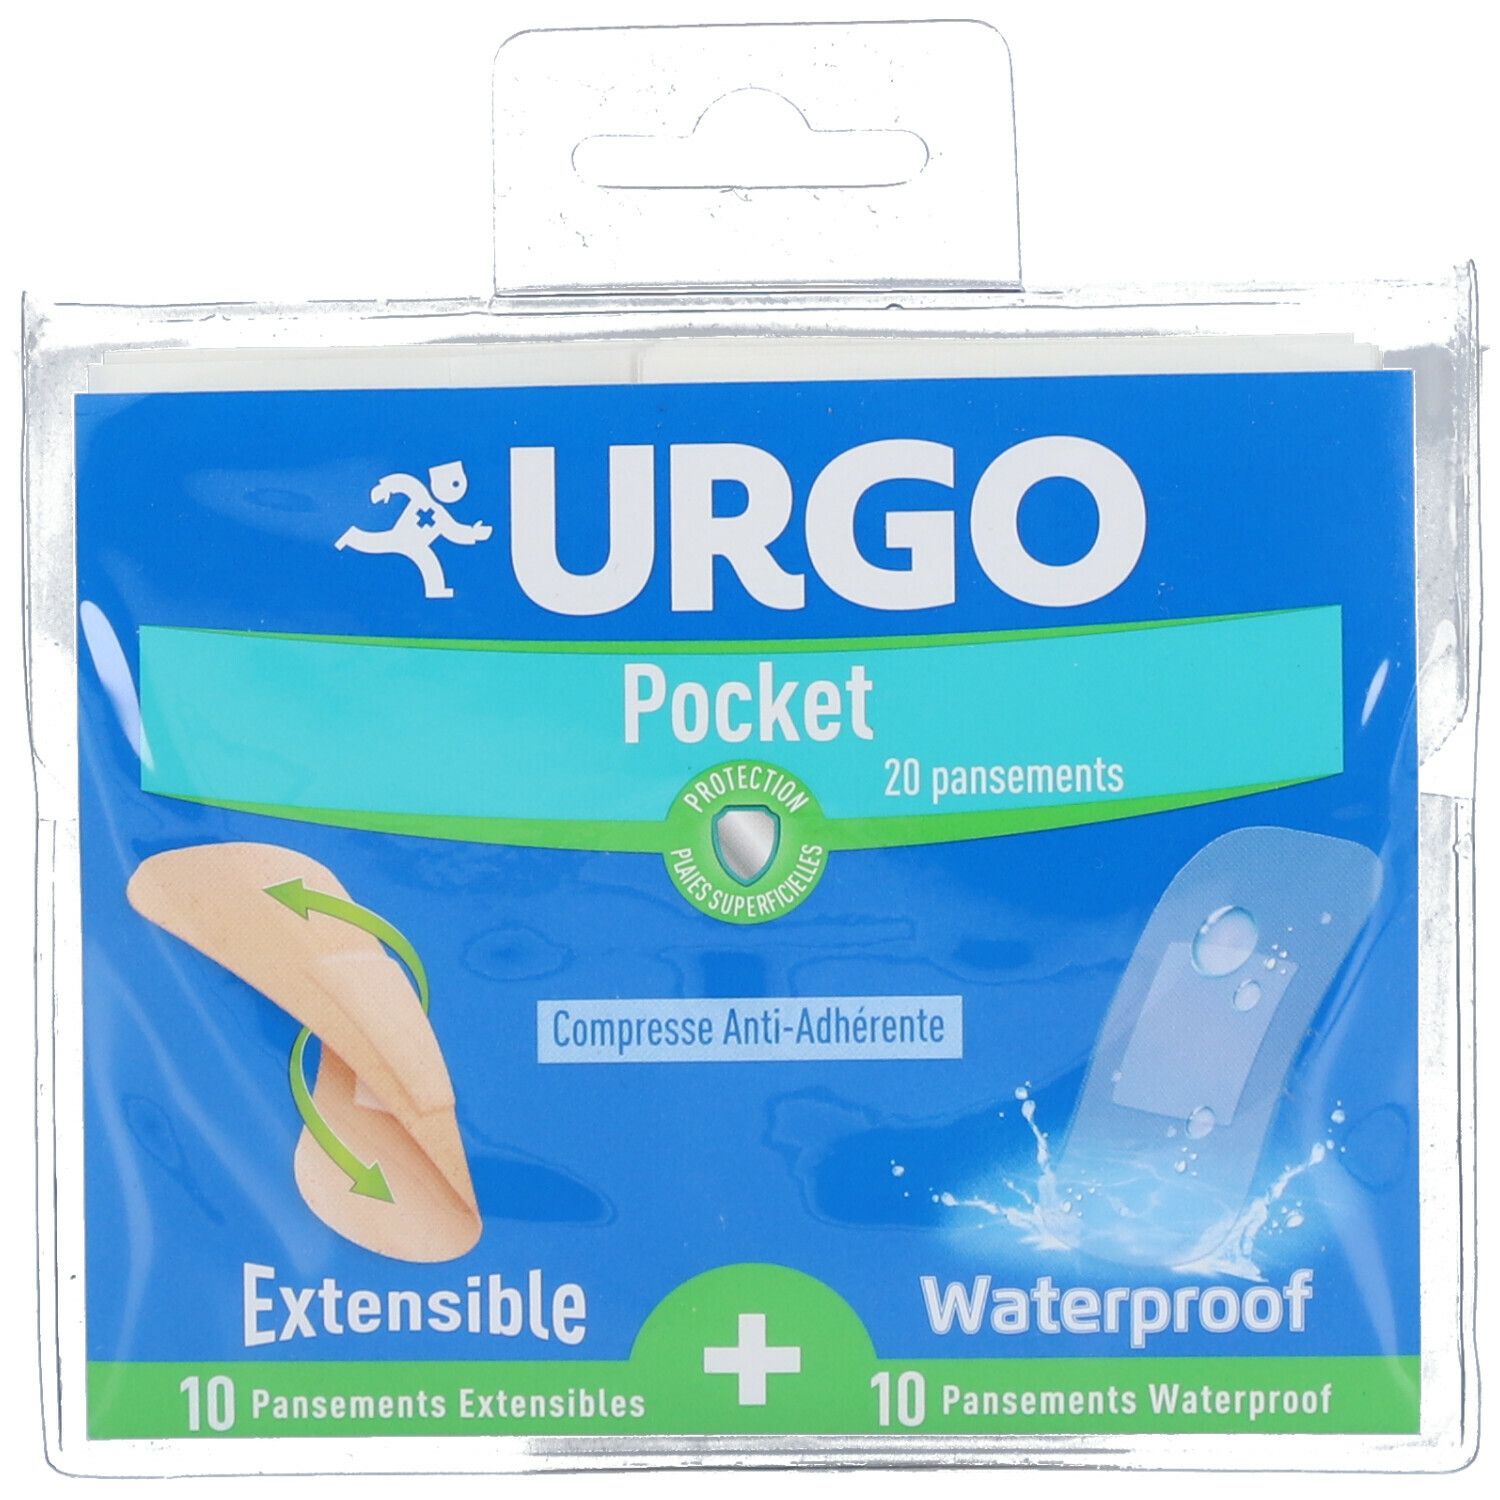 Urgo Pocket Extensible & Waterproof Pansements Protecteurs